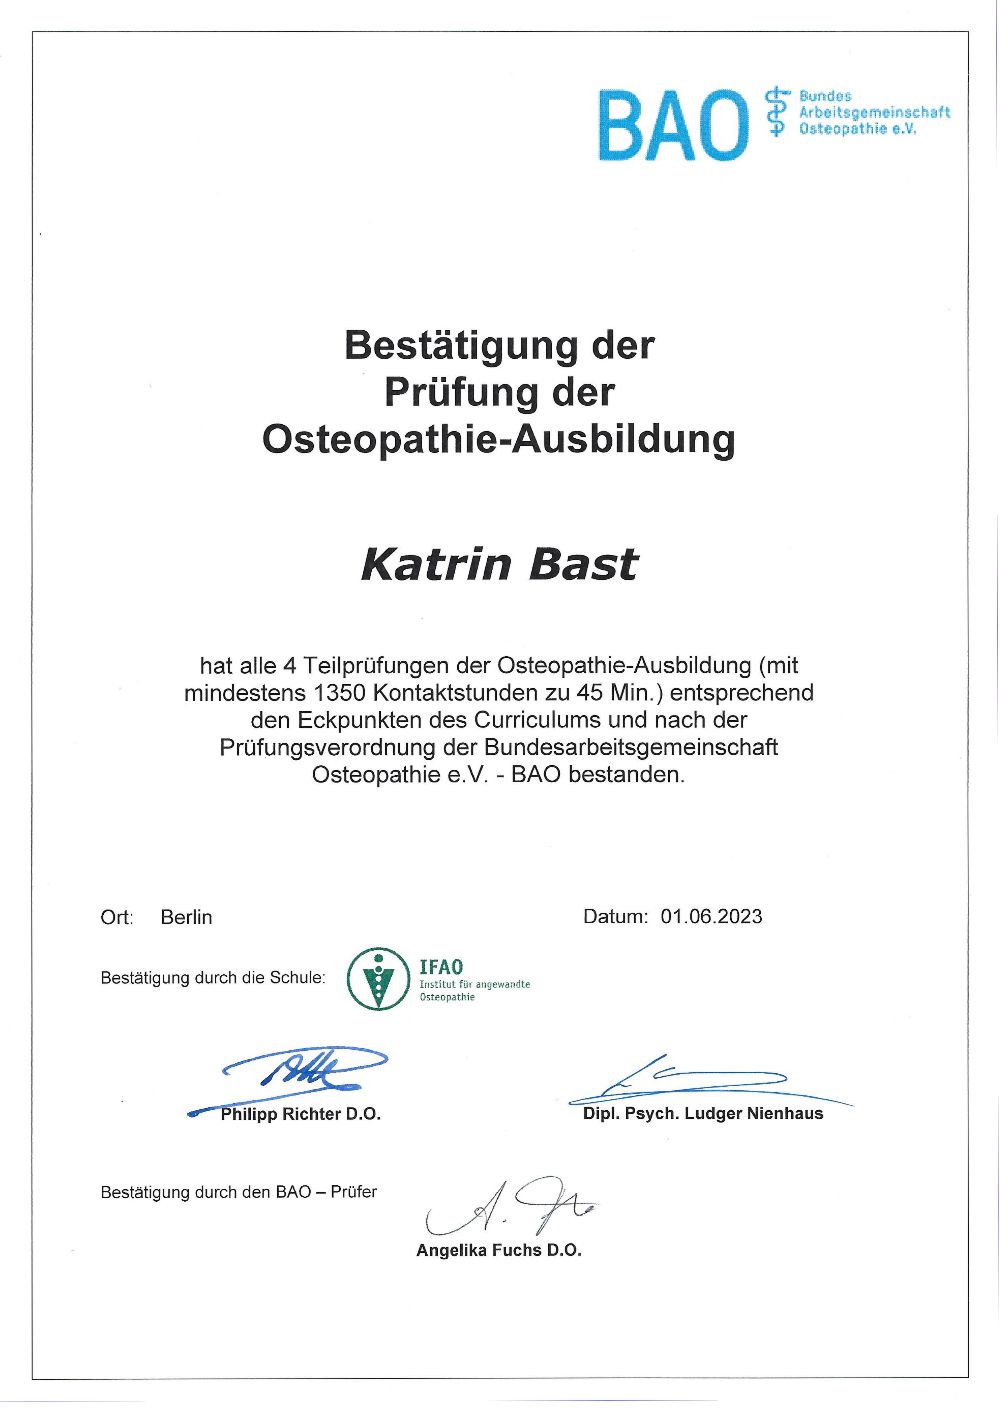 Katrin Bast - Urkunde Osteopathie Ausbildung zur Ansicht